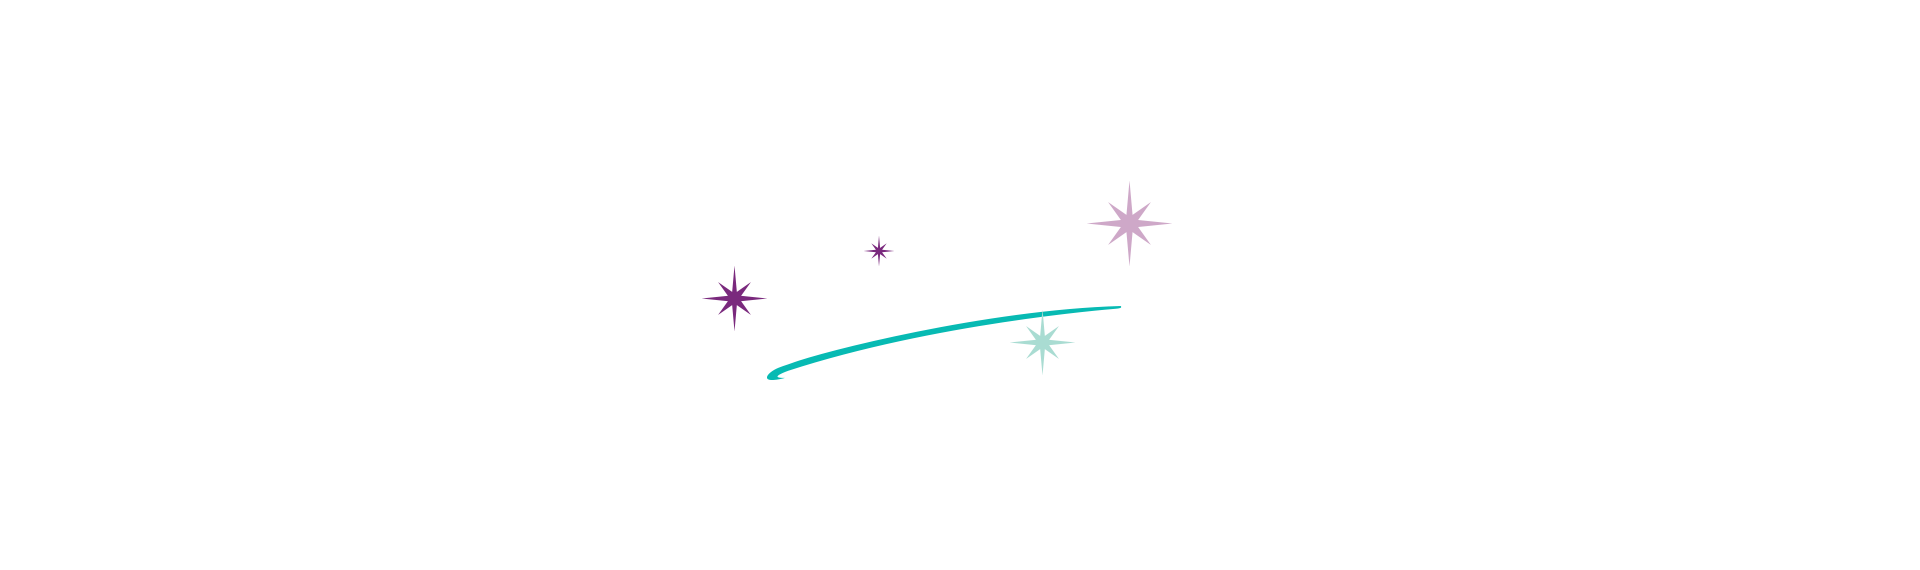 marlton-text-overlay